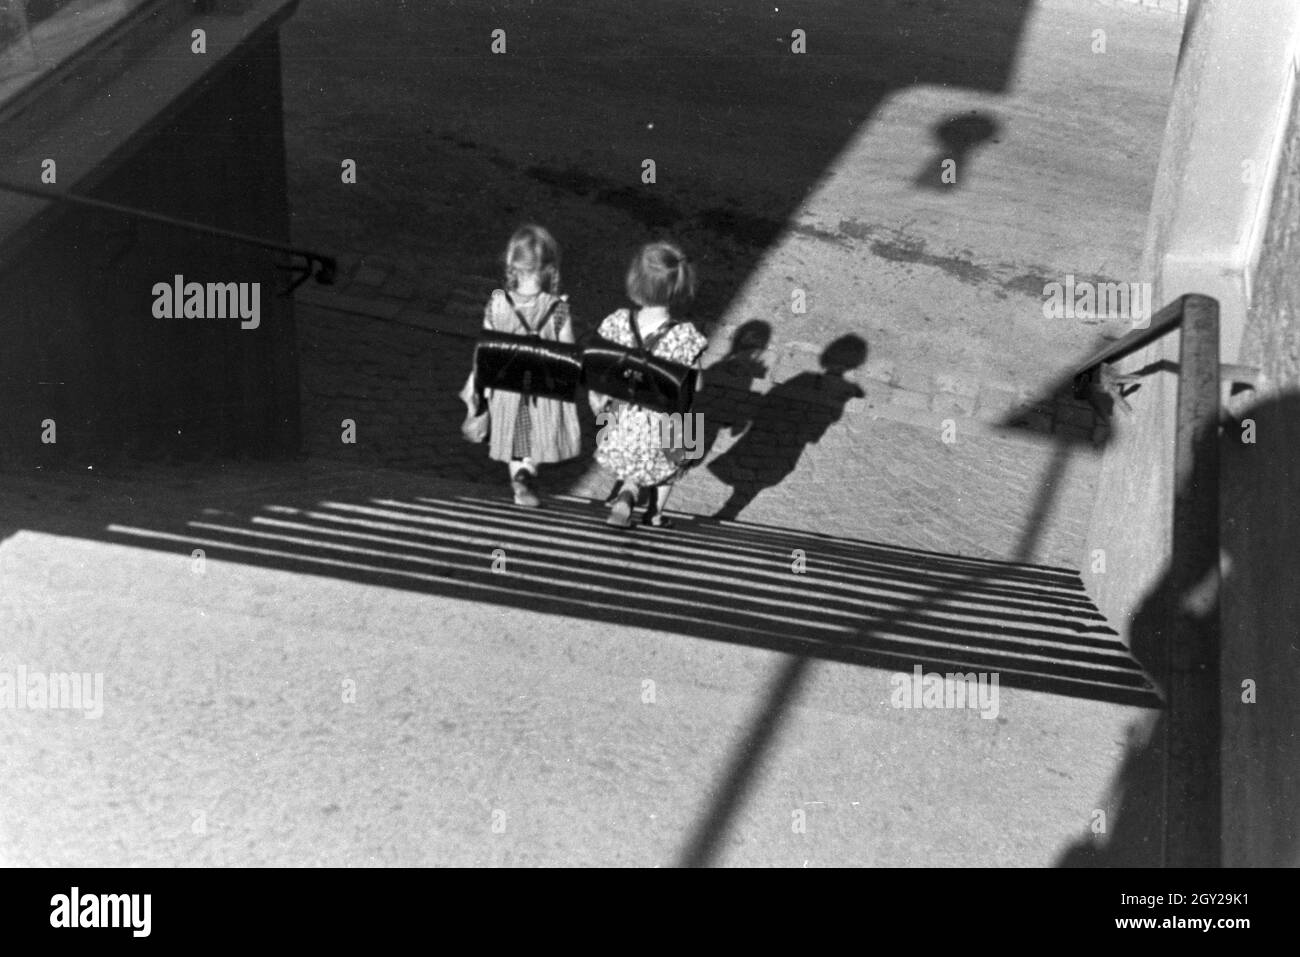 Zwei kleine Schulmädchen auf dem Heimweg, Deutsches Reich 1930er Jahre. Two little schoolgirls on their way home, Germany 1930s. Stock Photo